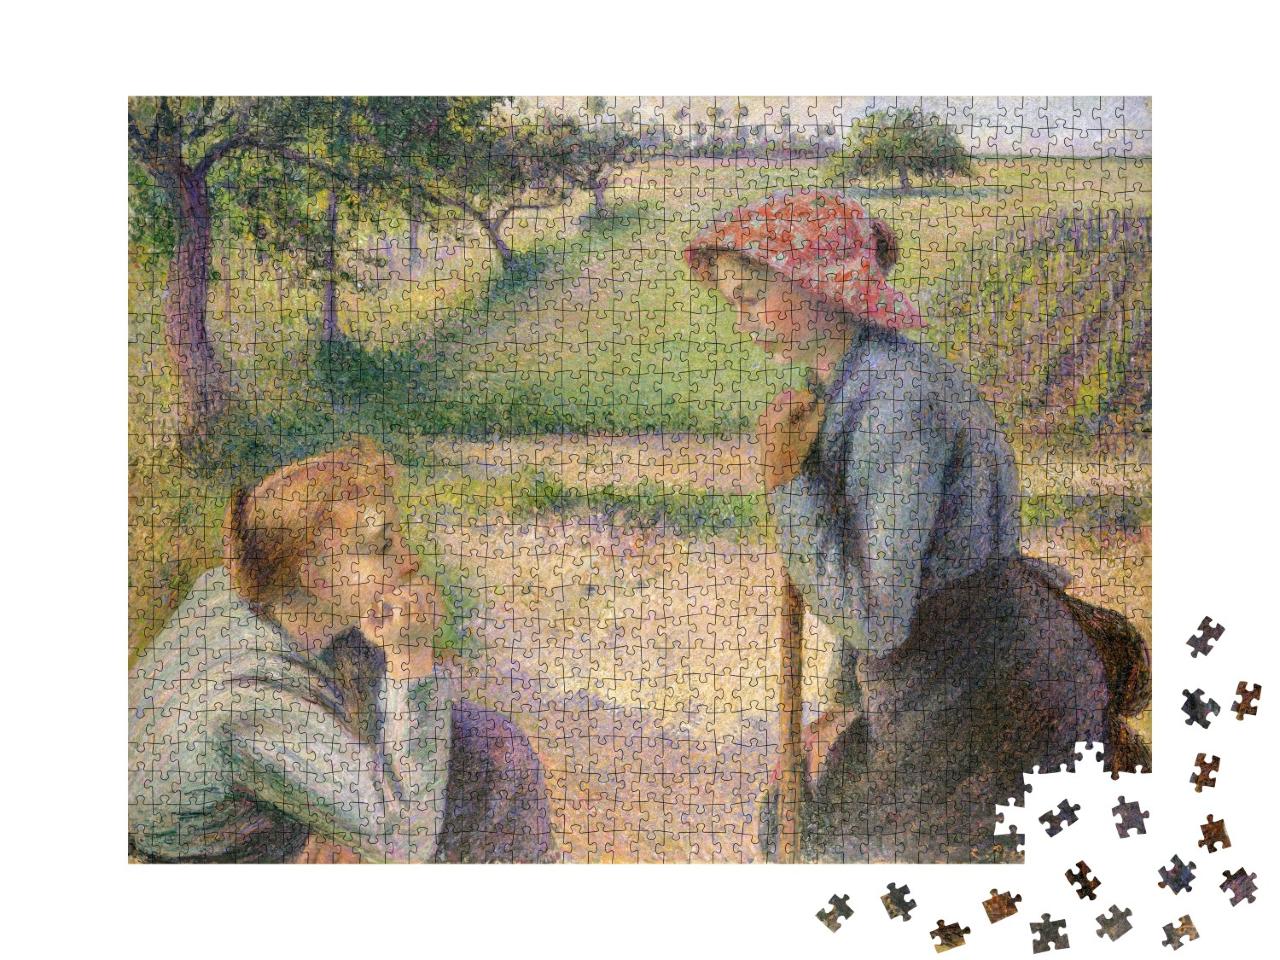 Puzzle de 1000 pièces « Camille Pissarro - Deux jeunes paysannes »